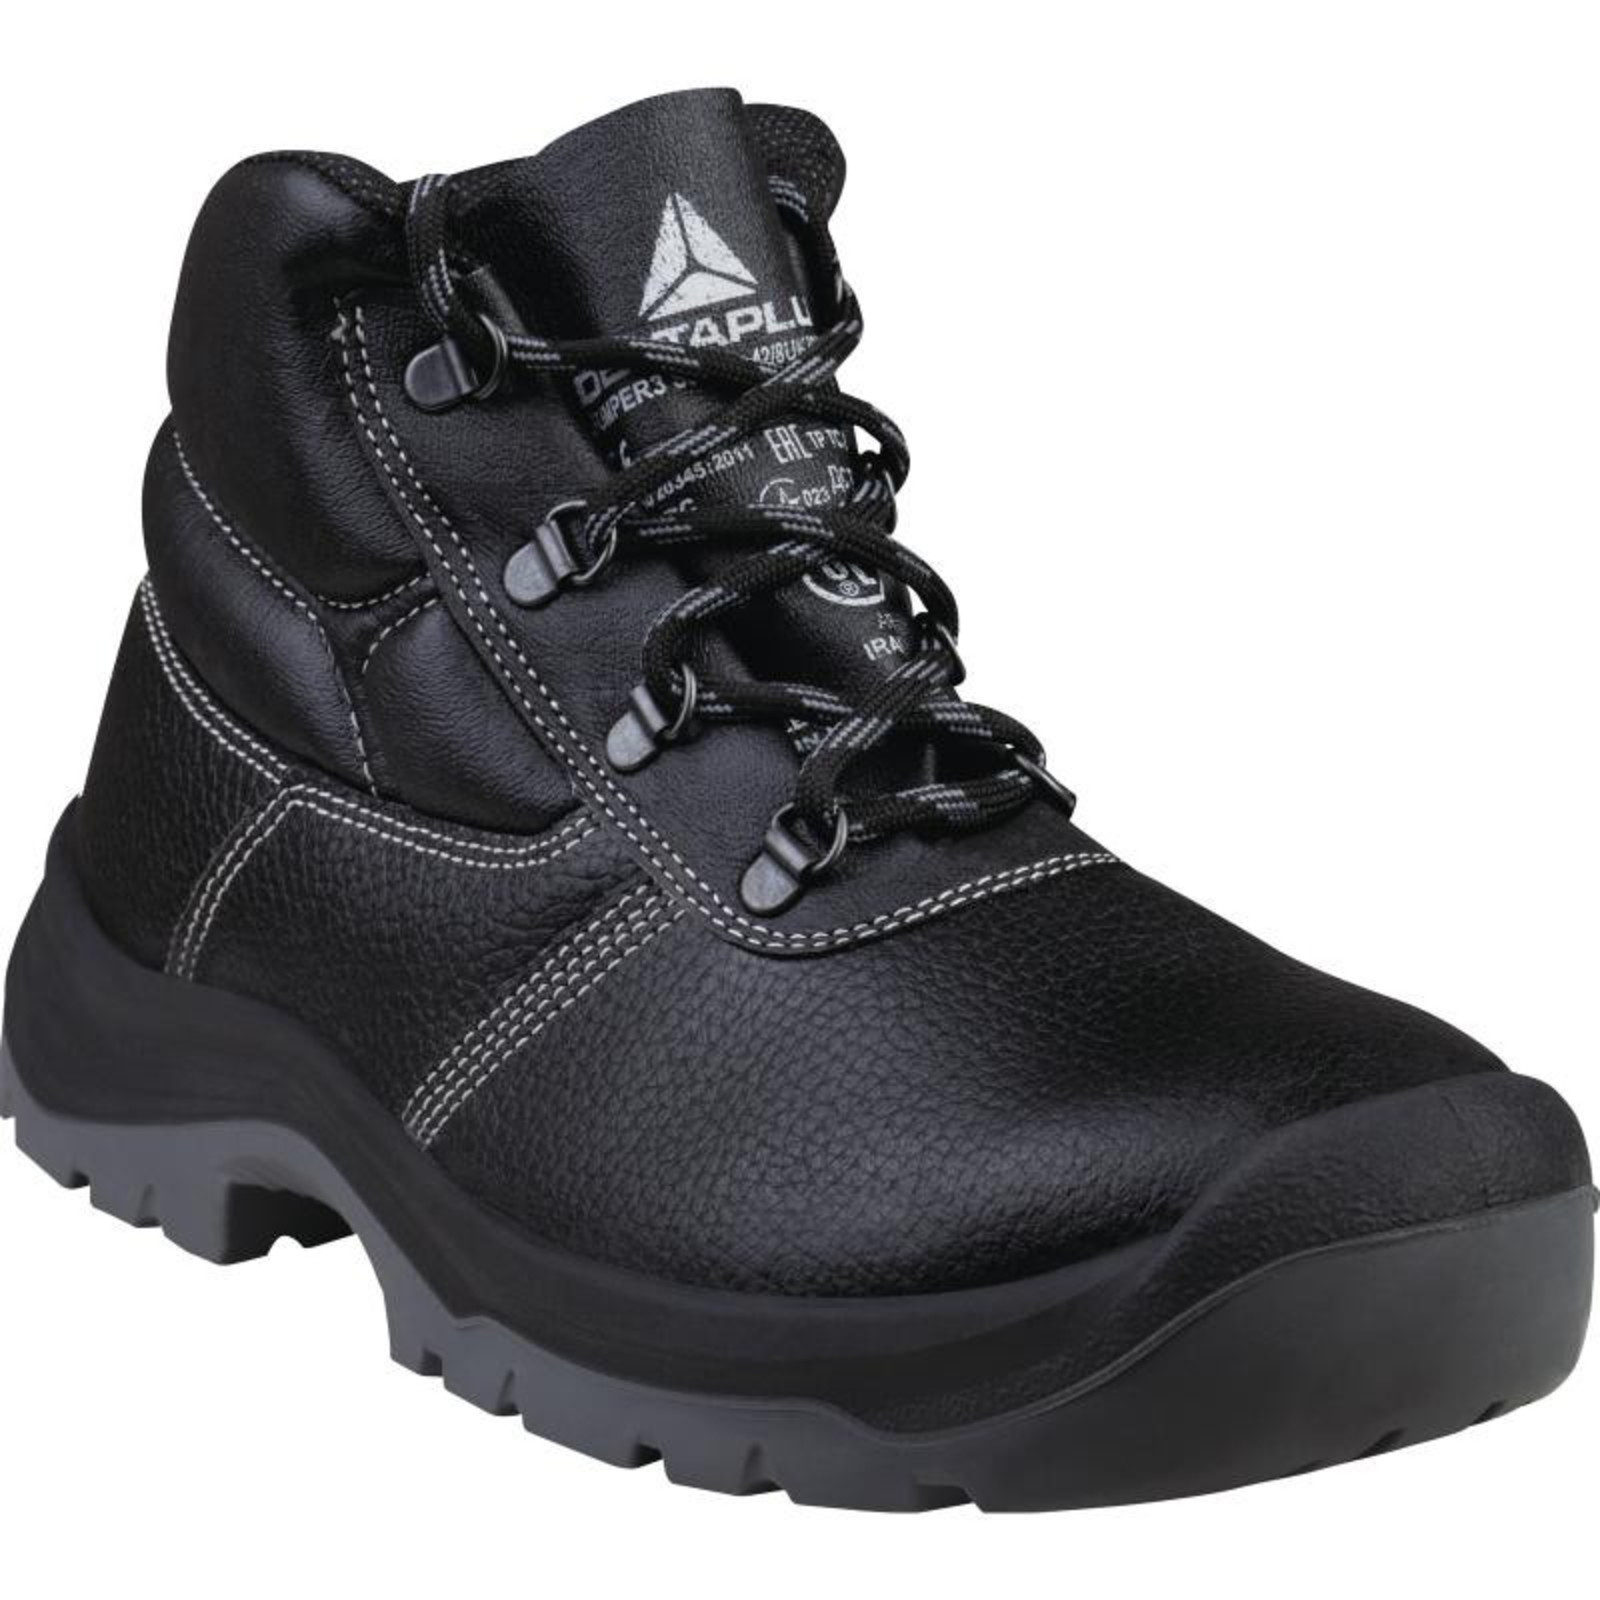 Členková bezpečnostná obuv Delta Plus Jumper3 S3 SRC - veľkosť: 44, farba: čierna